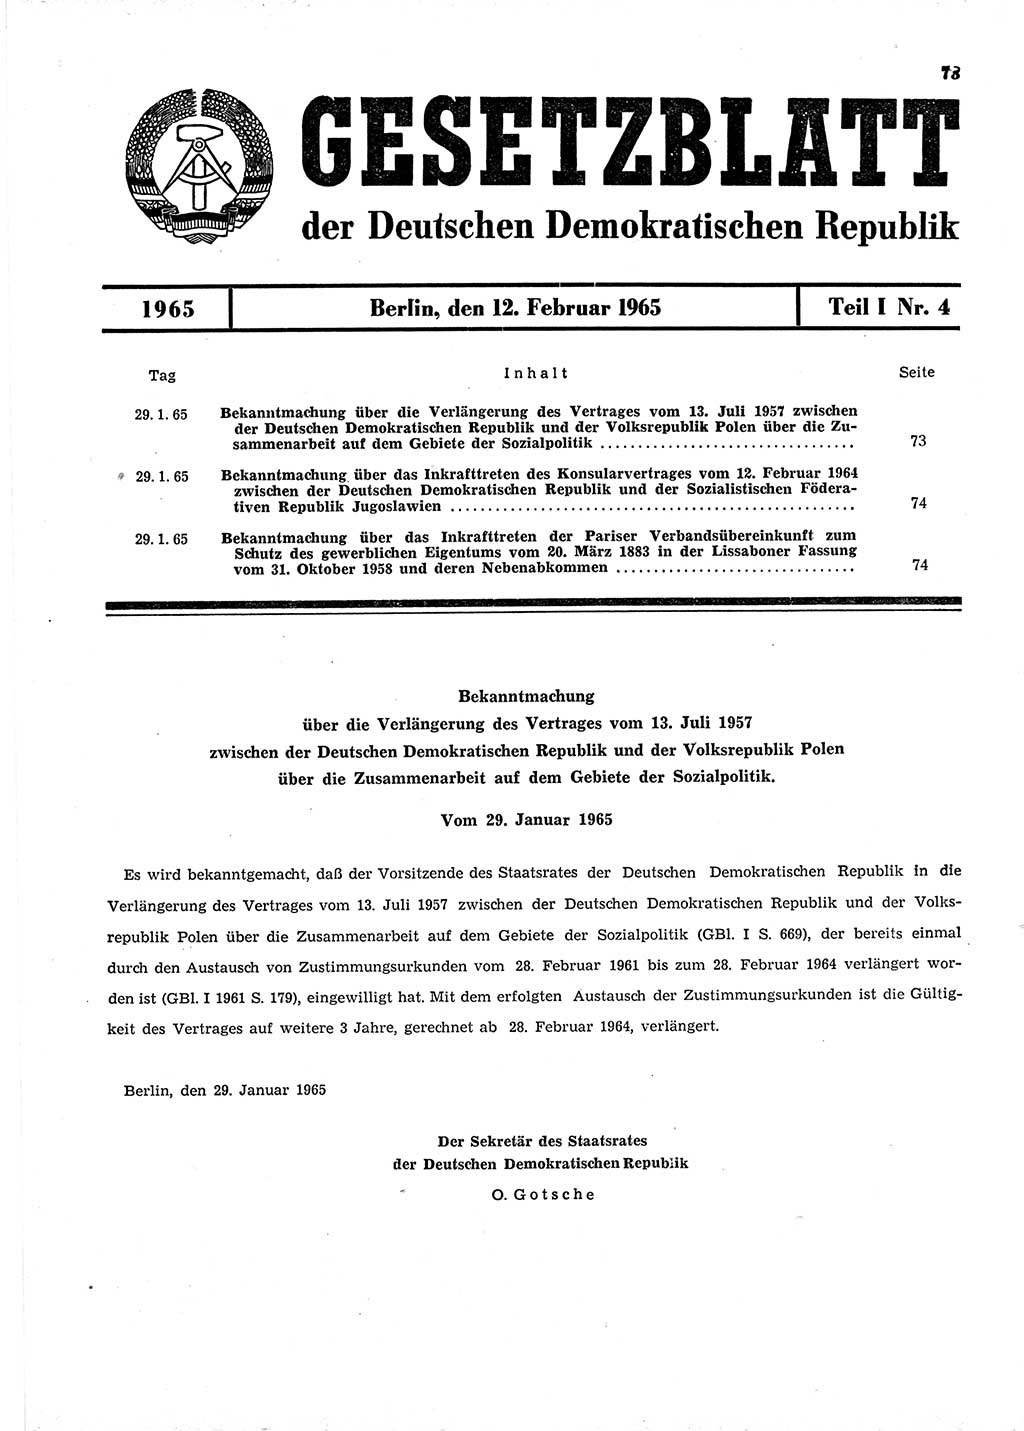 Gesetzblatt (GBl.) der Deutschen Demokratischen Republik (DDR) Teil Ⅰ 1965, Seite 73 (GBl. DDR Ⅰ 1965, S. 73)